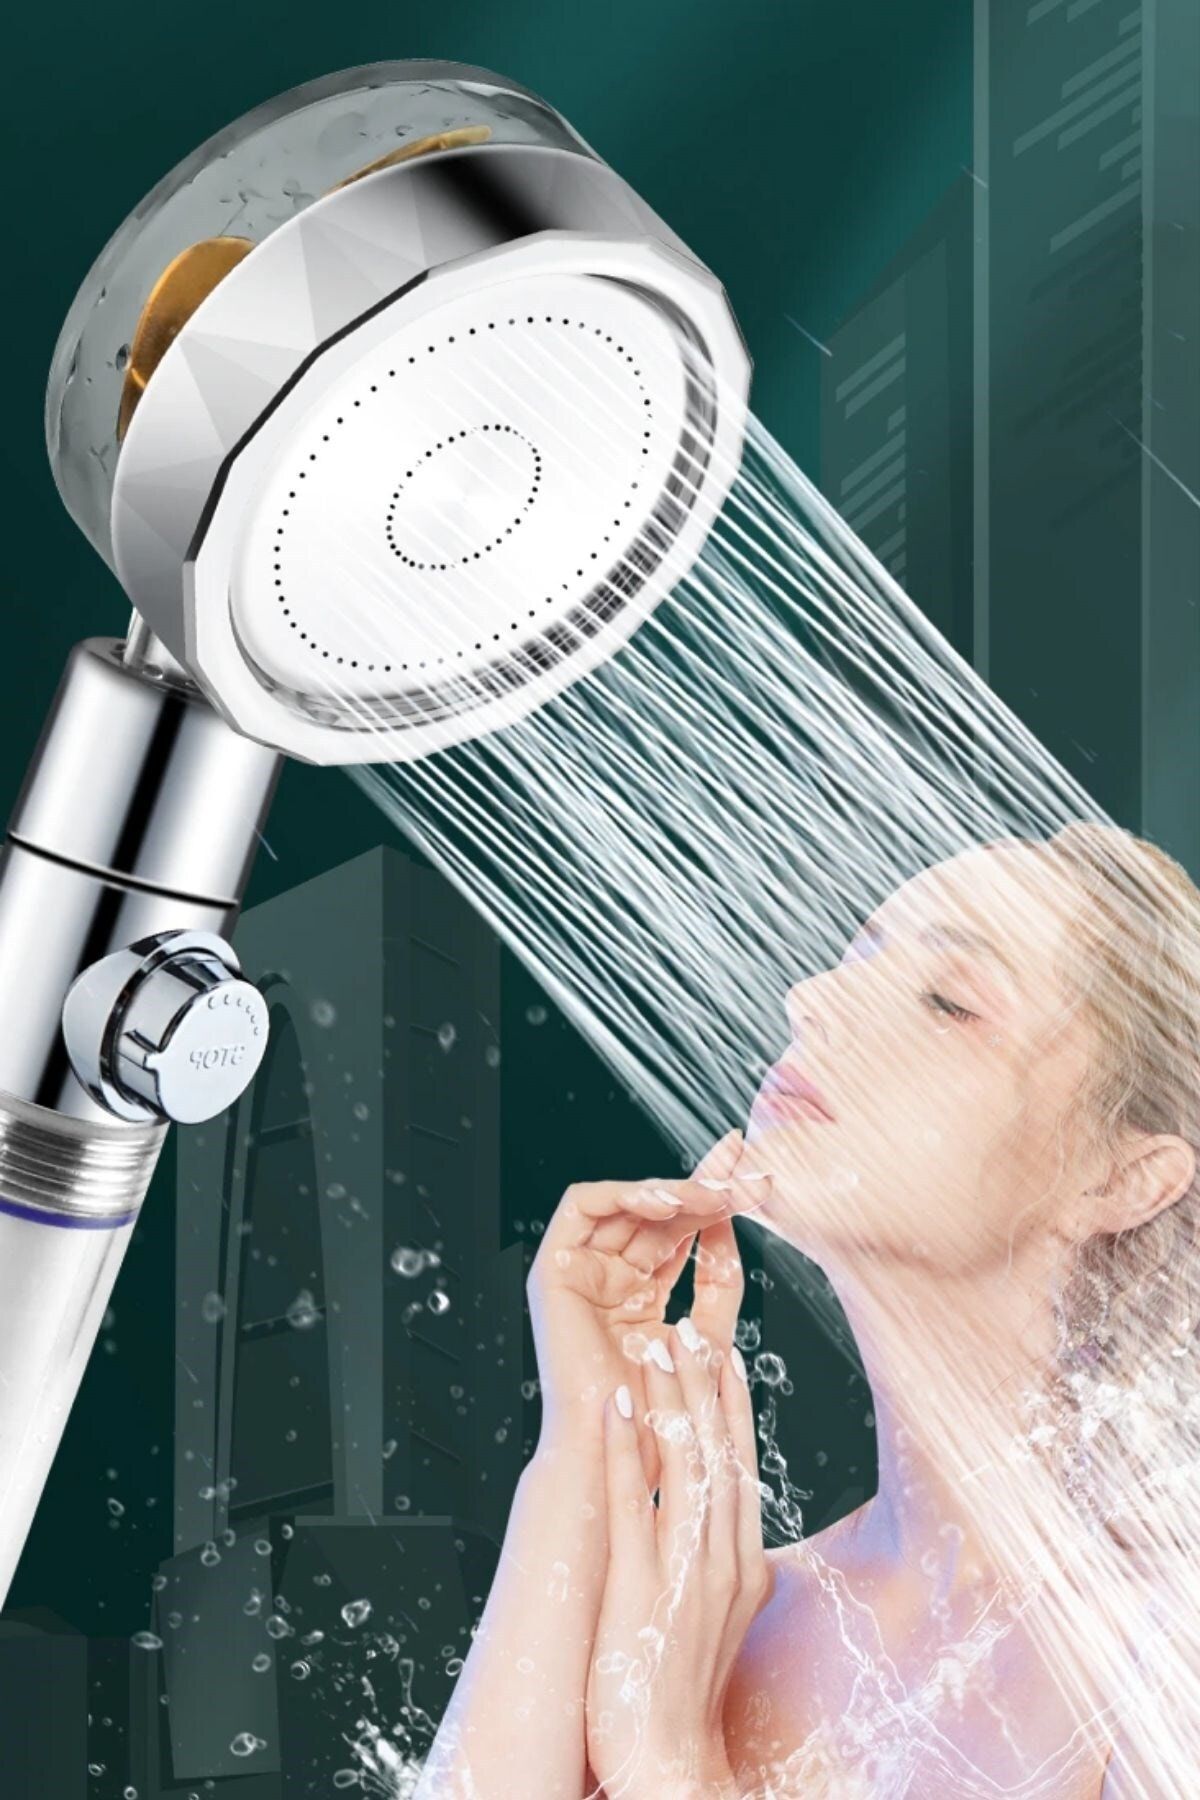 Buffer ® Turbo Pervaneli Su Tasarruflu 360 Derece Dönebilen Ayarlanabilir Tazyikli Duş Başlığı